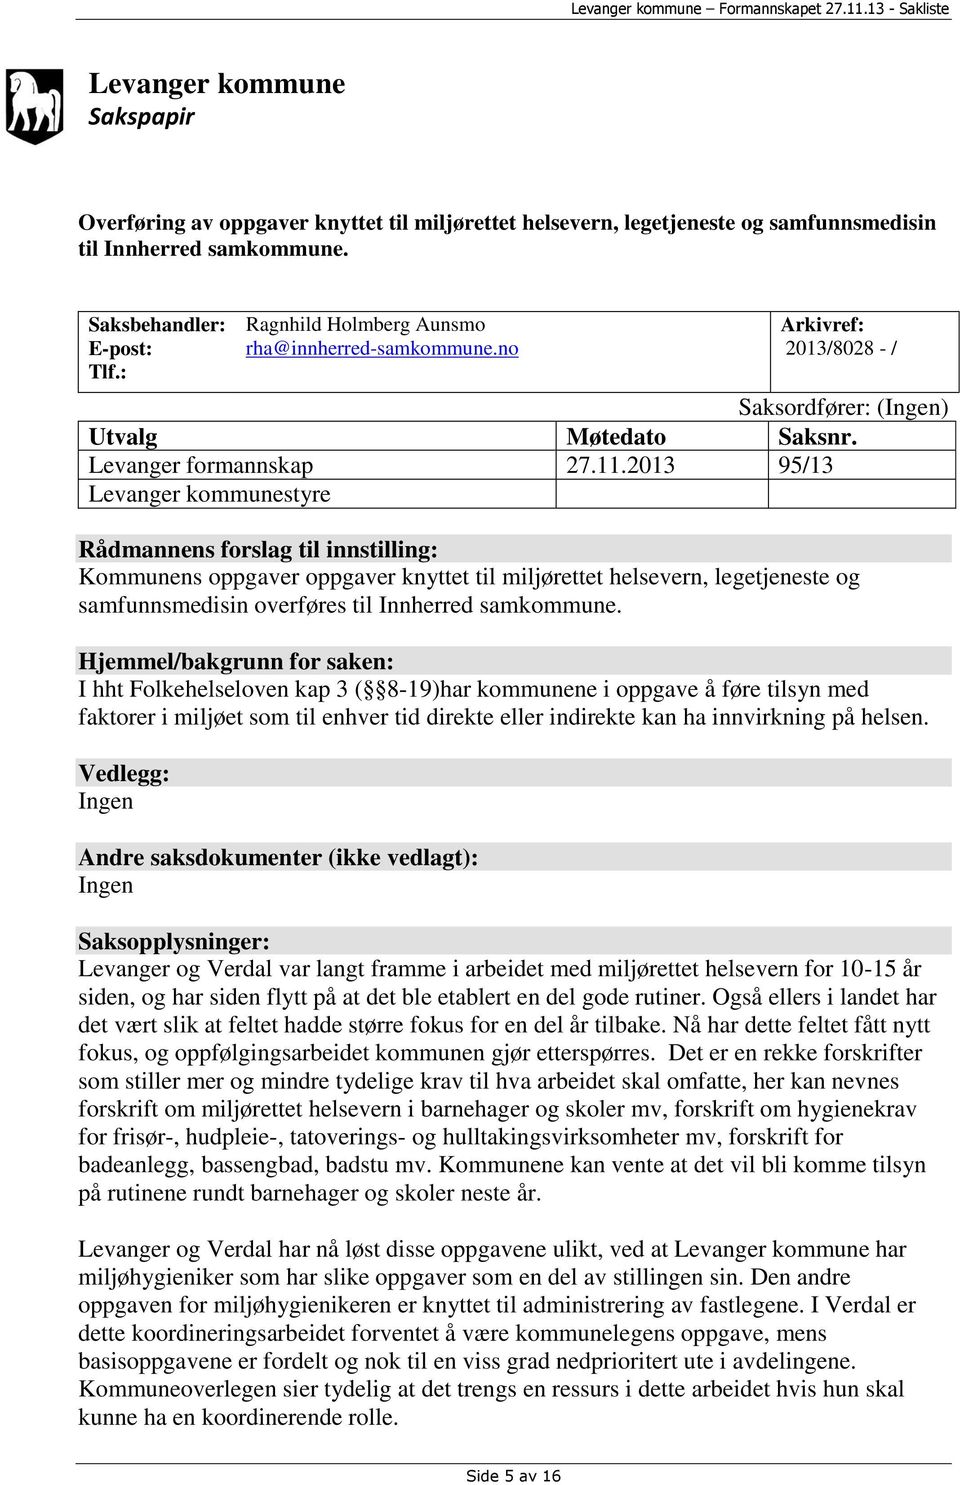 2013 95/13 Levanger kommunestyre Rådmannens forslag til innstilling: Kommunens oppgaver oppgaver knyttet til miljørettet helsevern, legetjeneste og samfunnsmedisin overføres til Innherred samkommune.